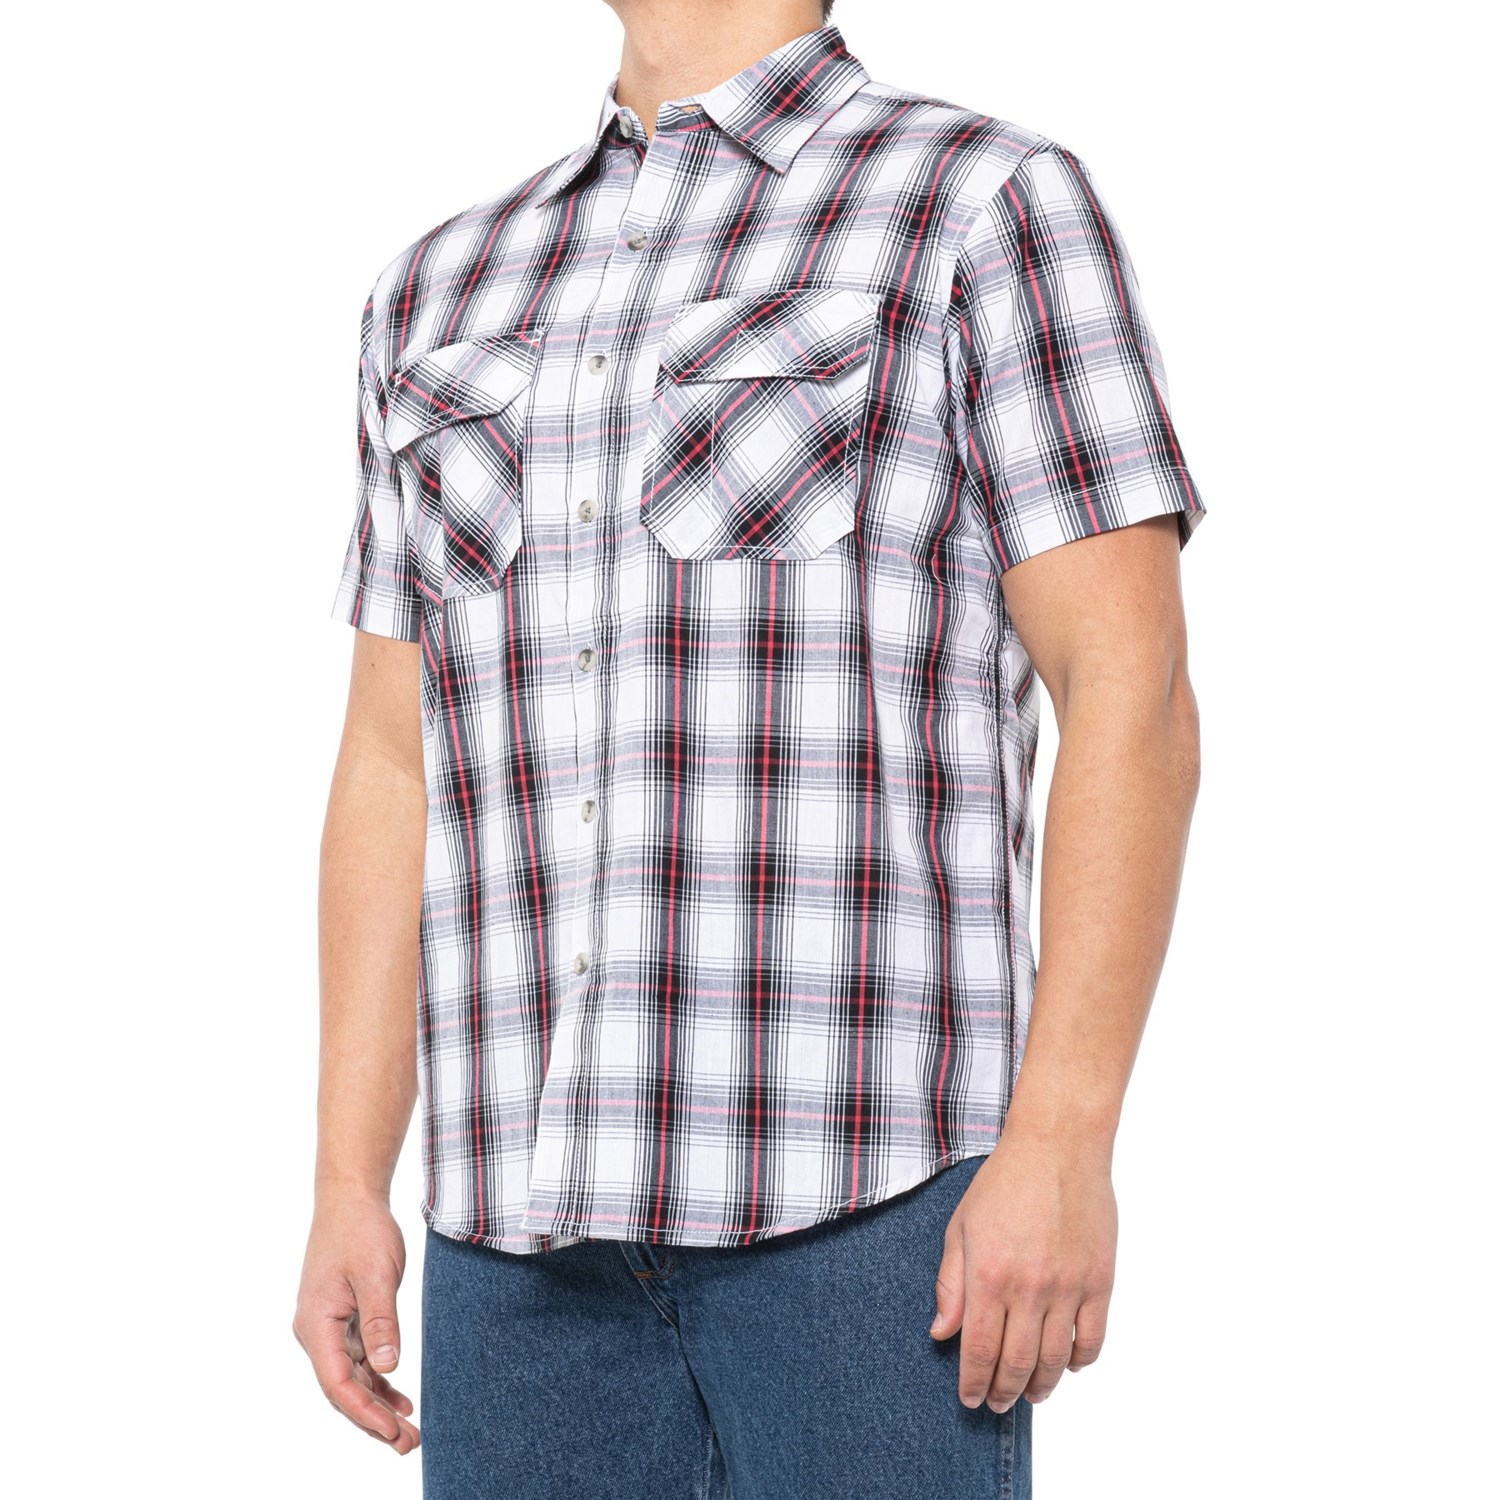 AmericaWare Funnel 2-Pocket Plaid Shirt (For Men) - Save 59%